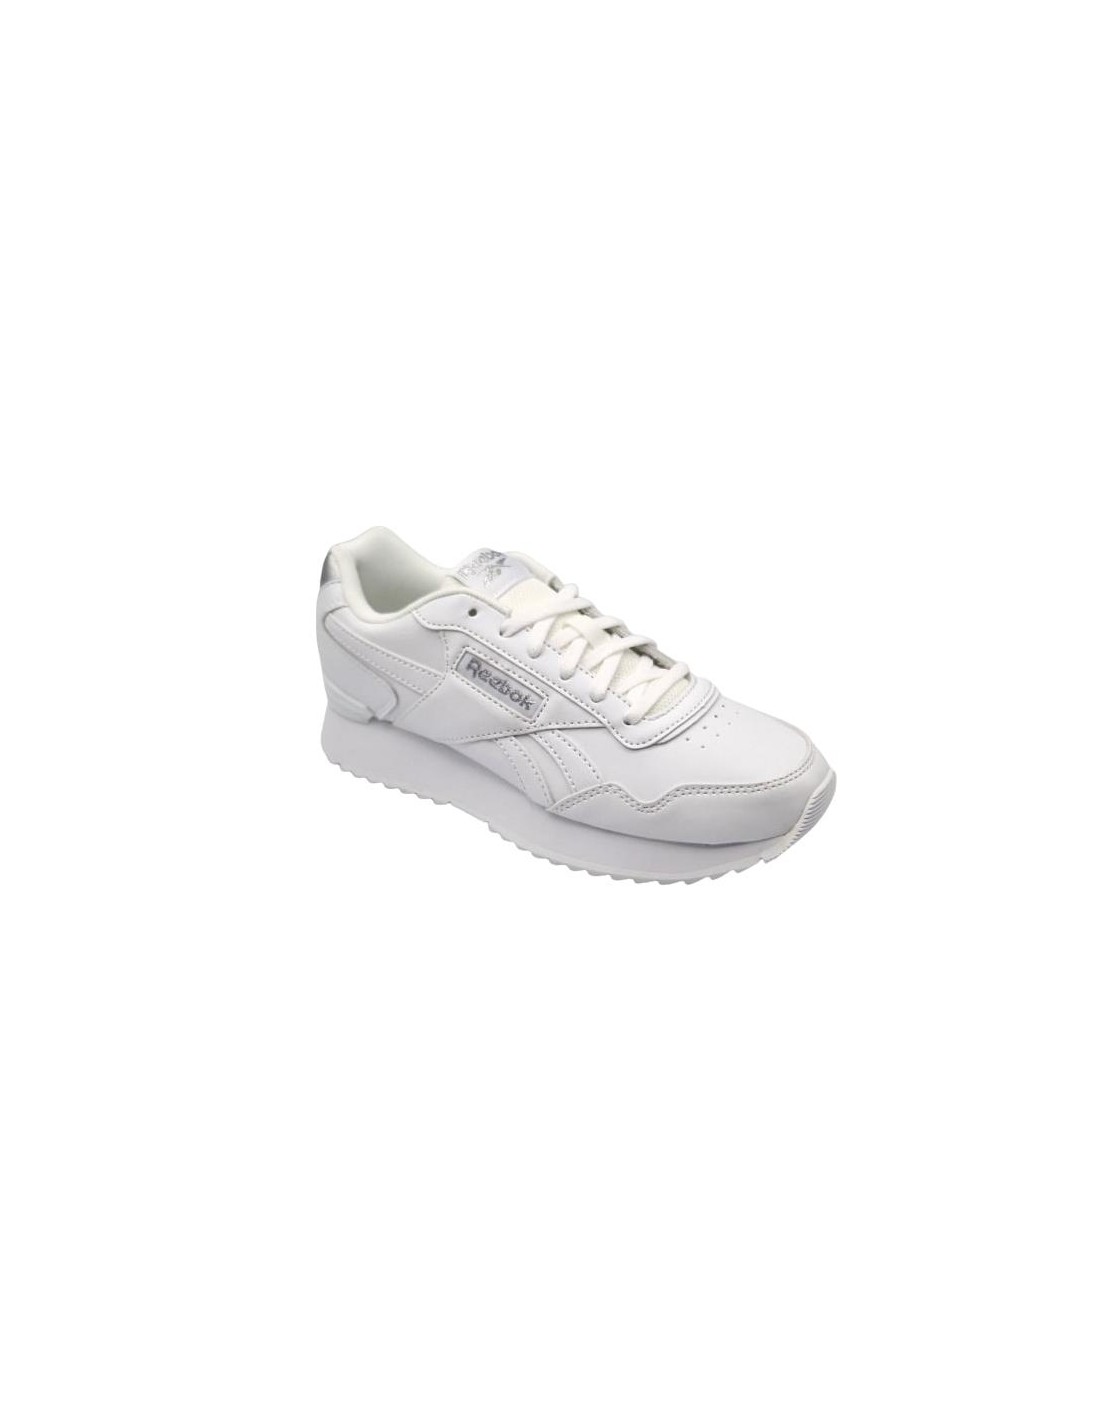 Zapatillas deportivas niñas Reebok en color blanco. Talla 27 Color